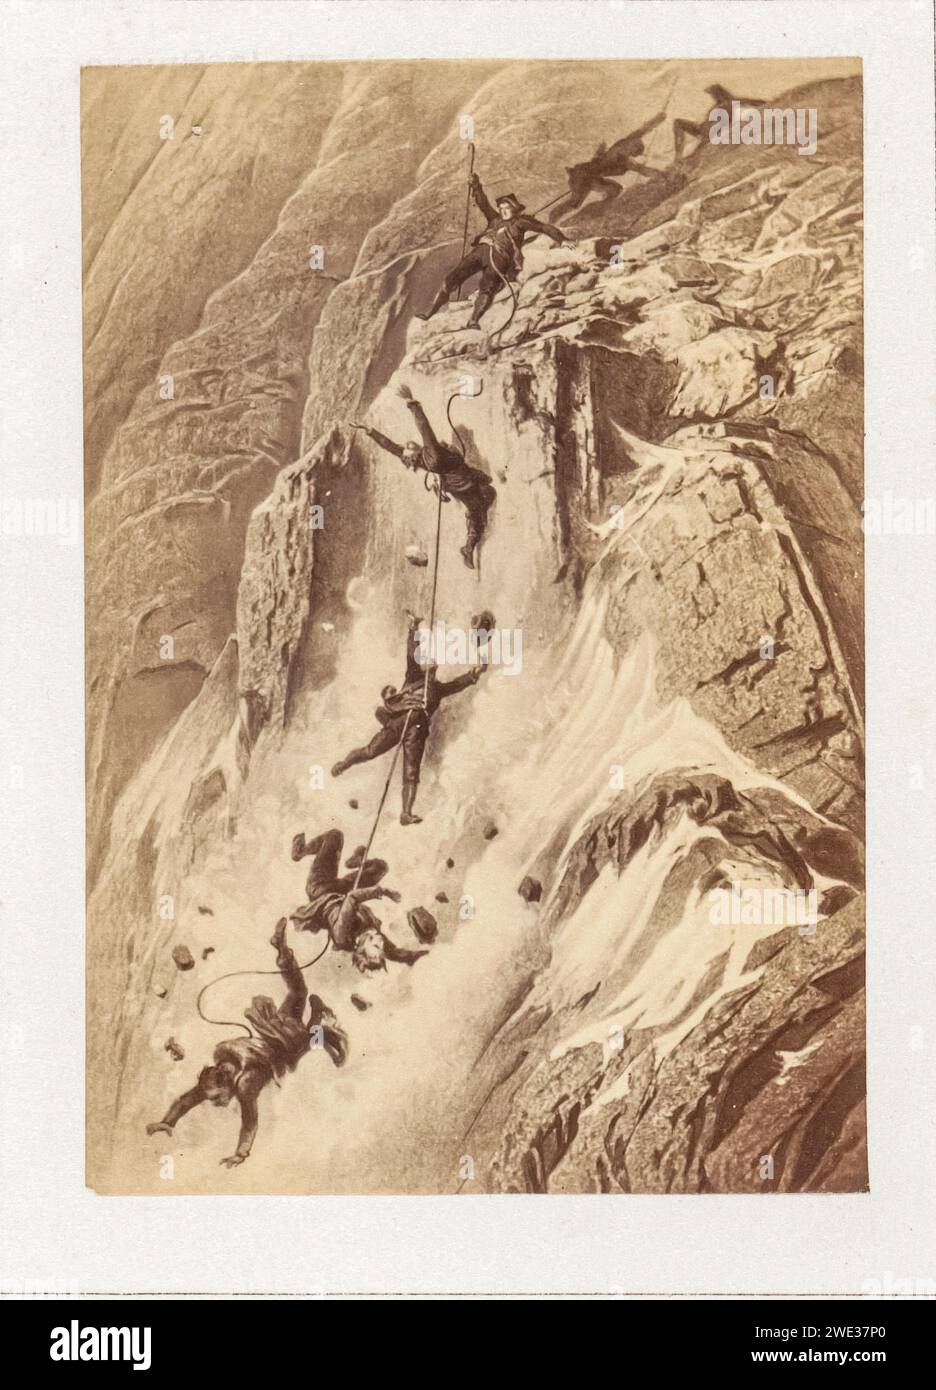 Ilustración del desastre de Matterhorn 14 de julio de 1865 por Gustave Doré - Primera expedición a Matterhorn Foto de stock